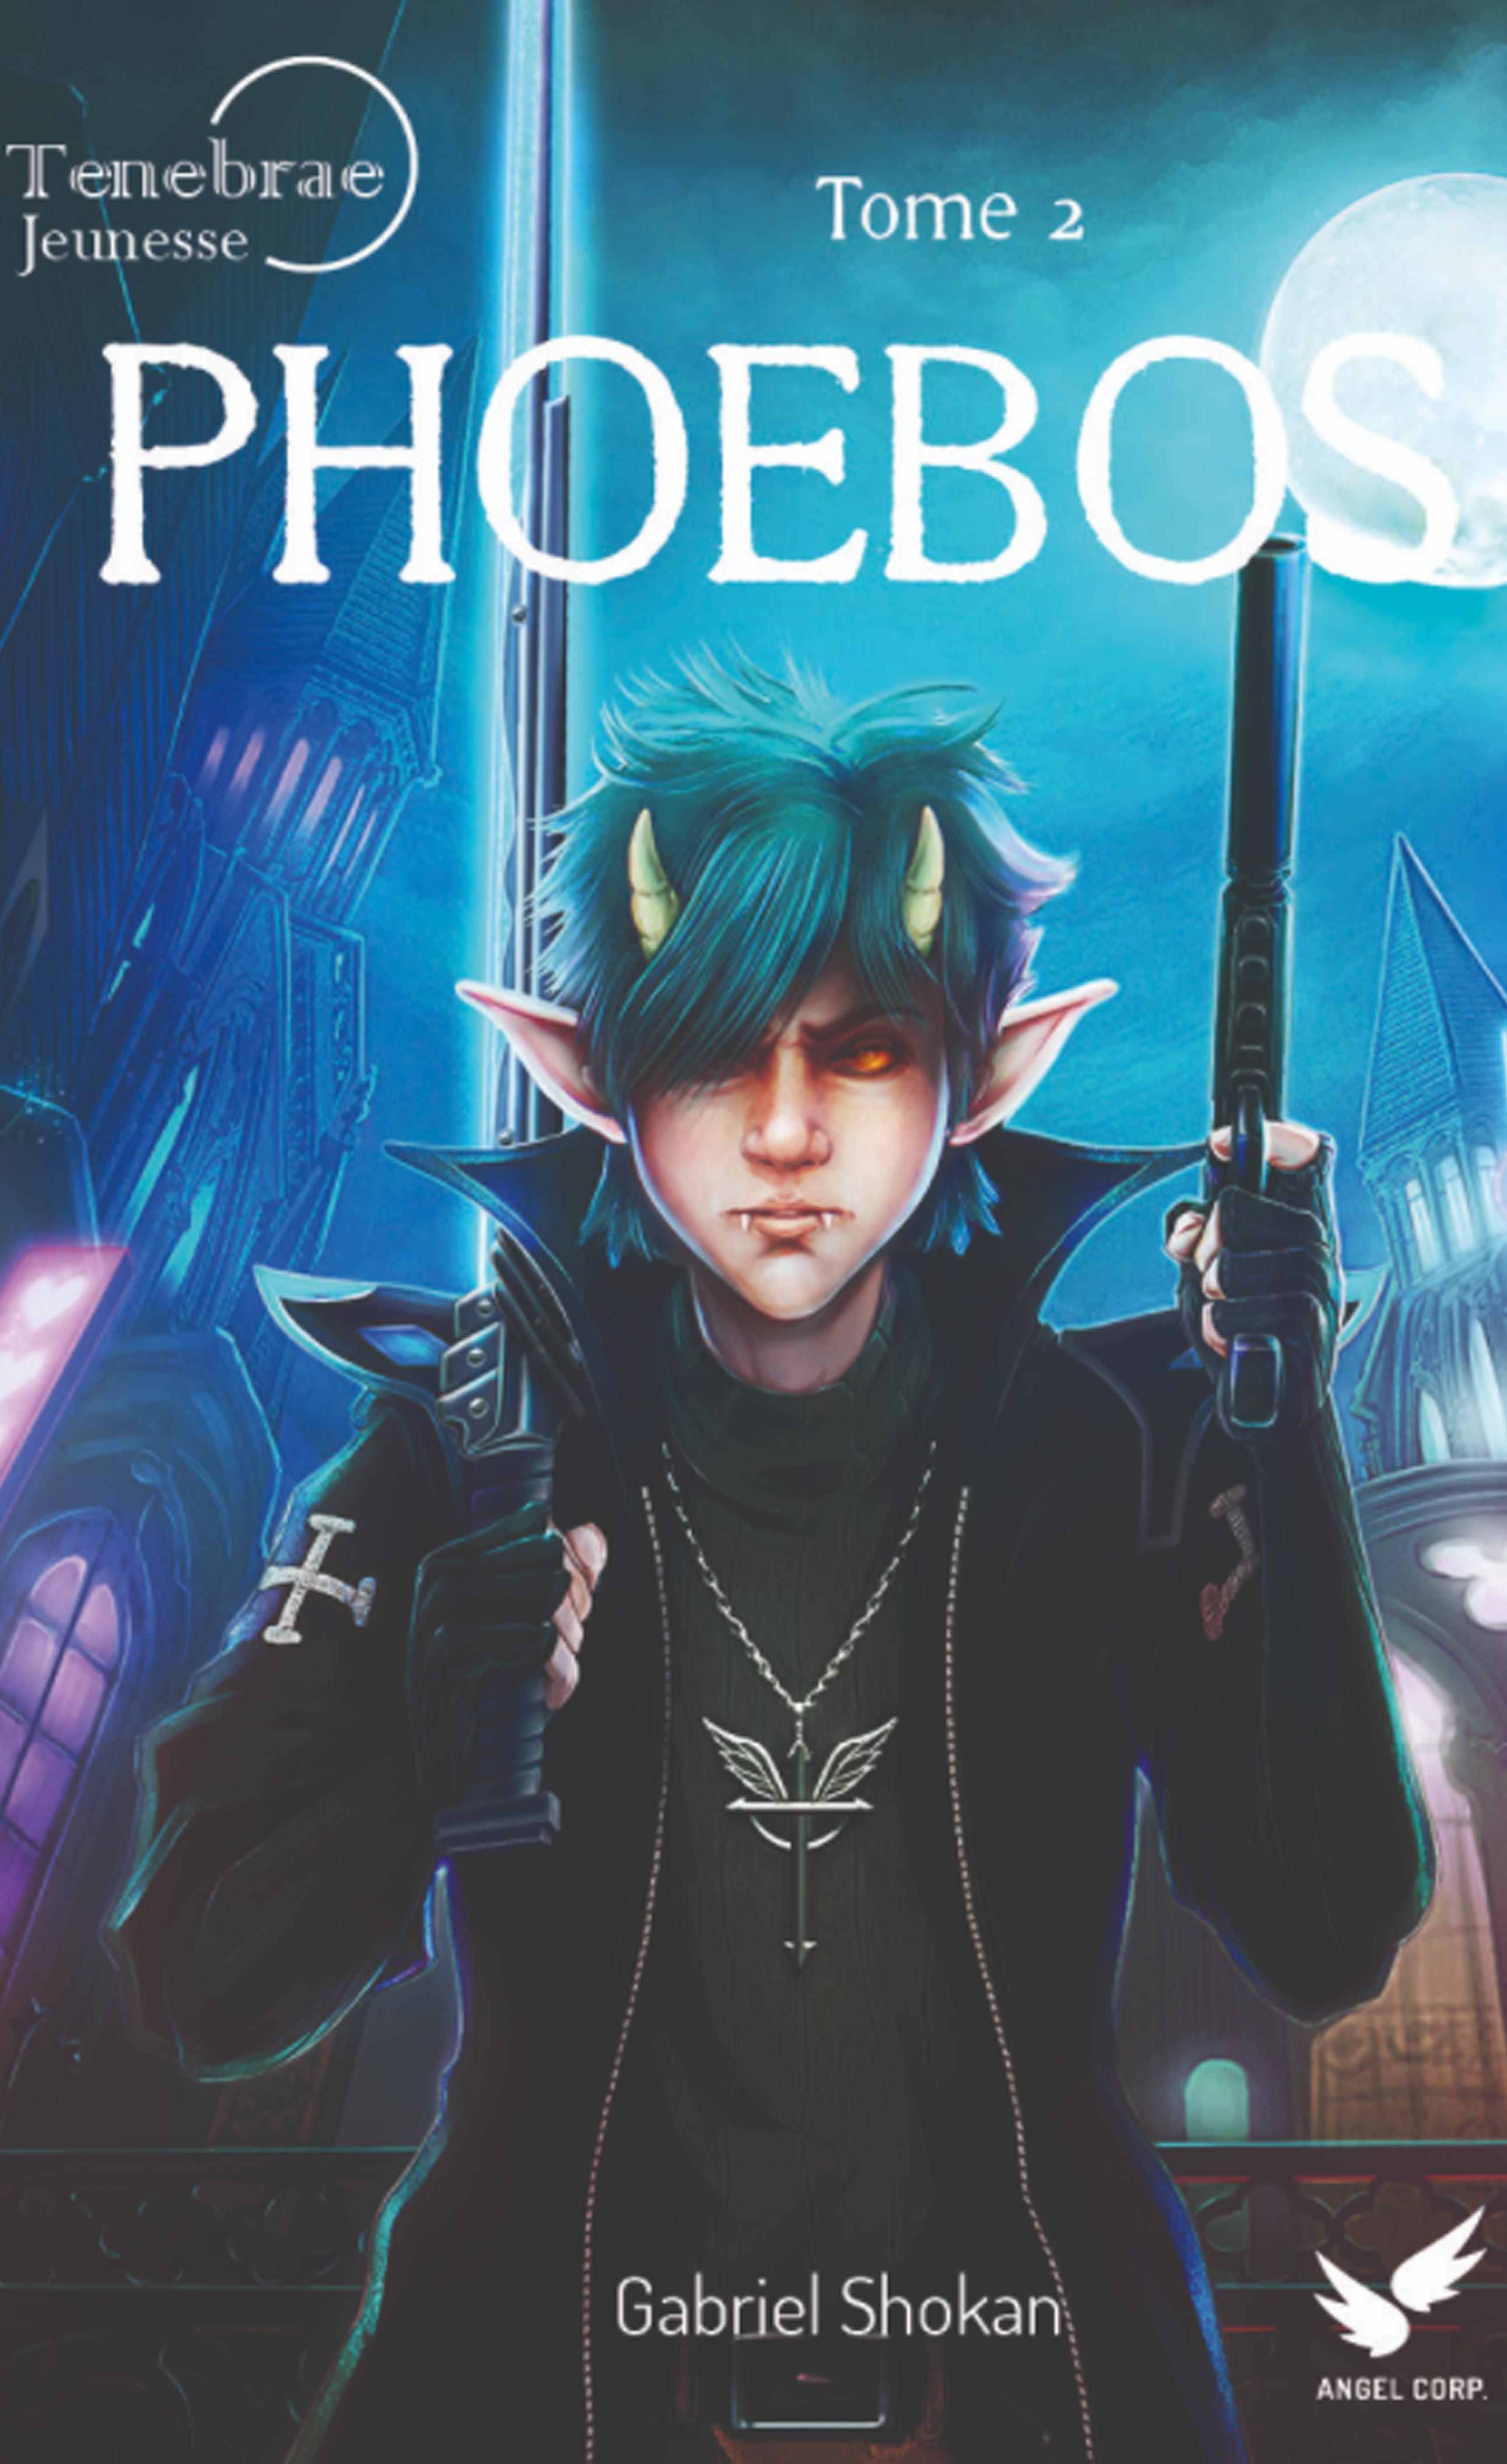 Couverture de Phoebos version jeunesse Tome 2 , le second roman de darkfantasy pour enfants du cycle de Tenebrae écrit par Gabriel Shokan 